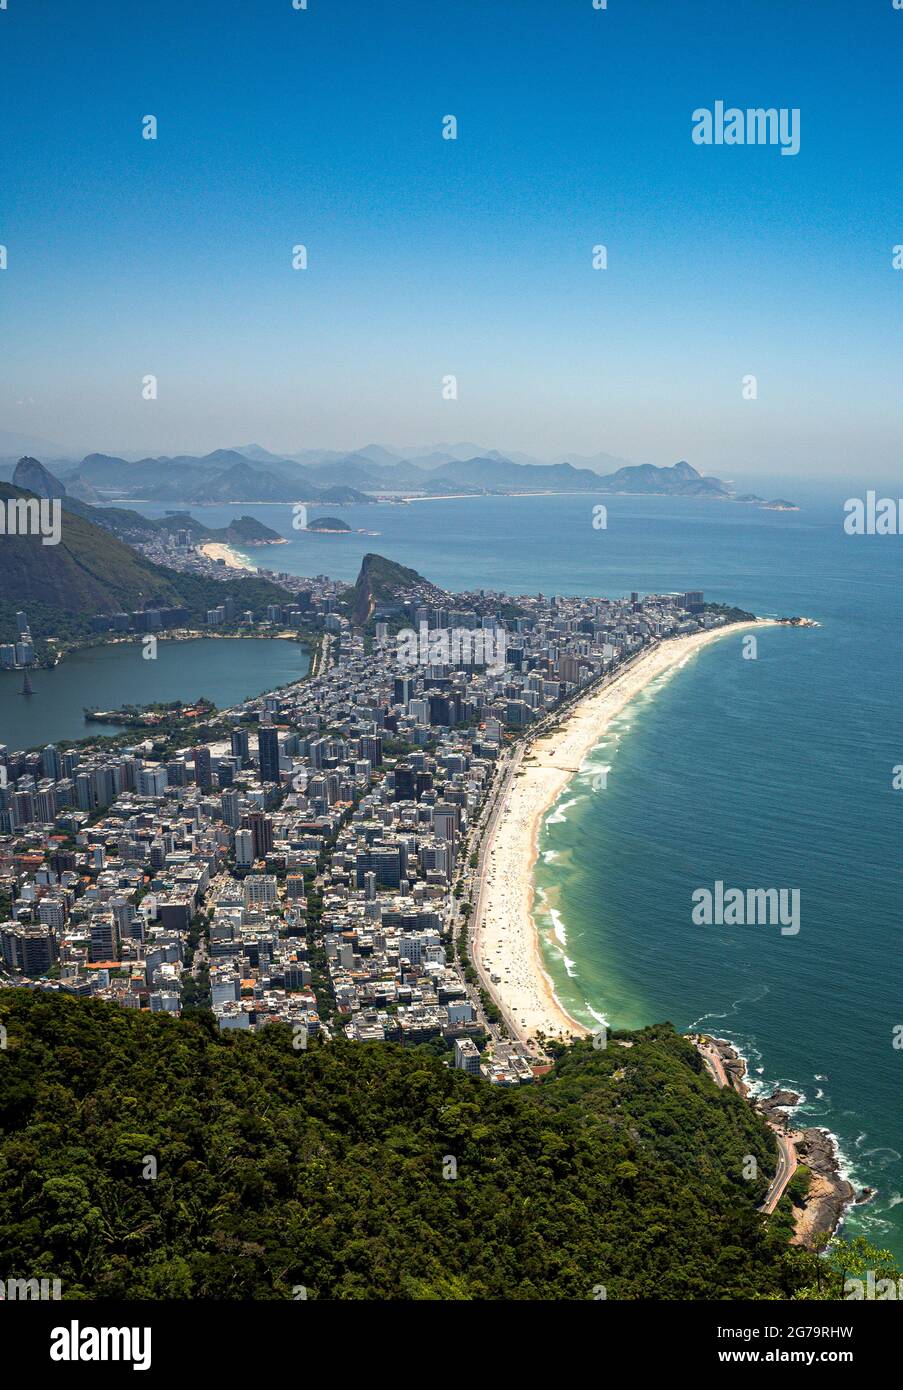 The scenic view of Ipanema/Leblon Beach and Lagoa Rodrigo de Freitas as viewed from the top of Dois Irmaos Two Brothers Mountain in Rio de Janeiro, Brazil Stock Photo